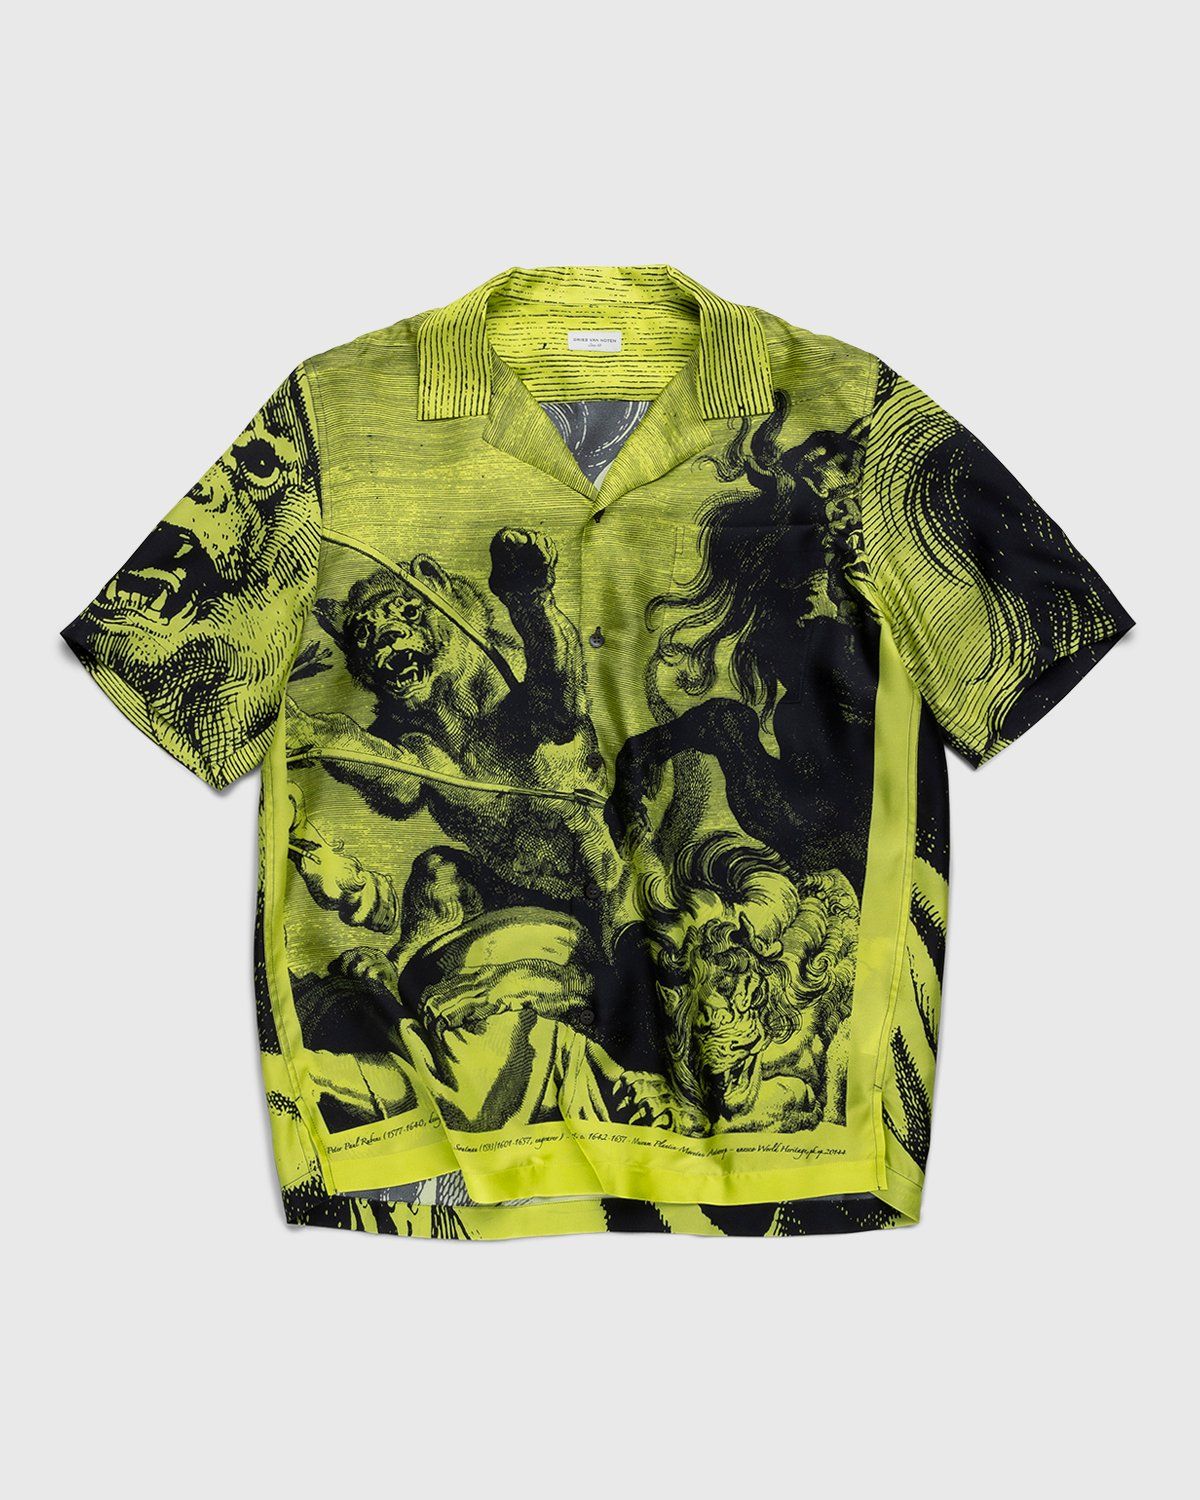 Dries van Noten – Carltone Silk Shirt Yellow - Shirts - Yellow - Image 1